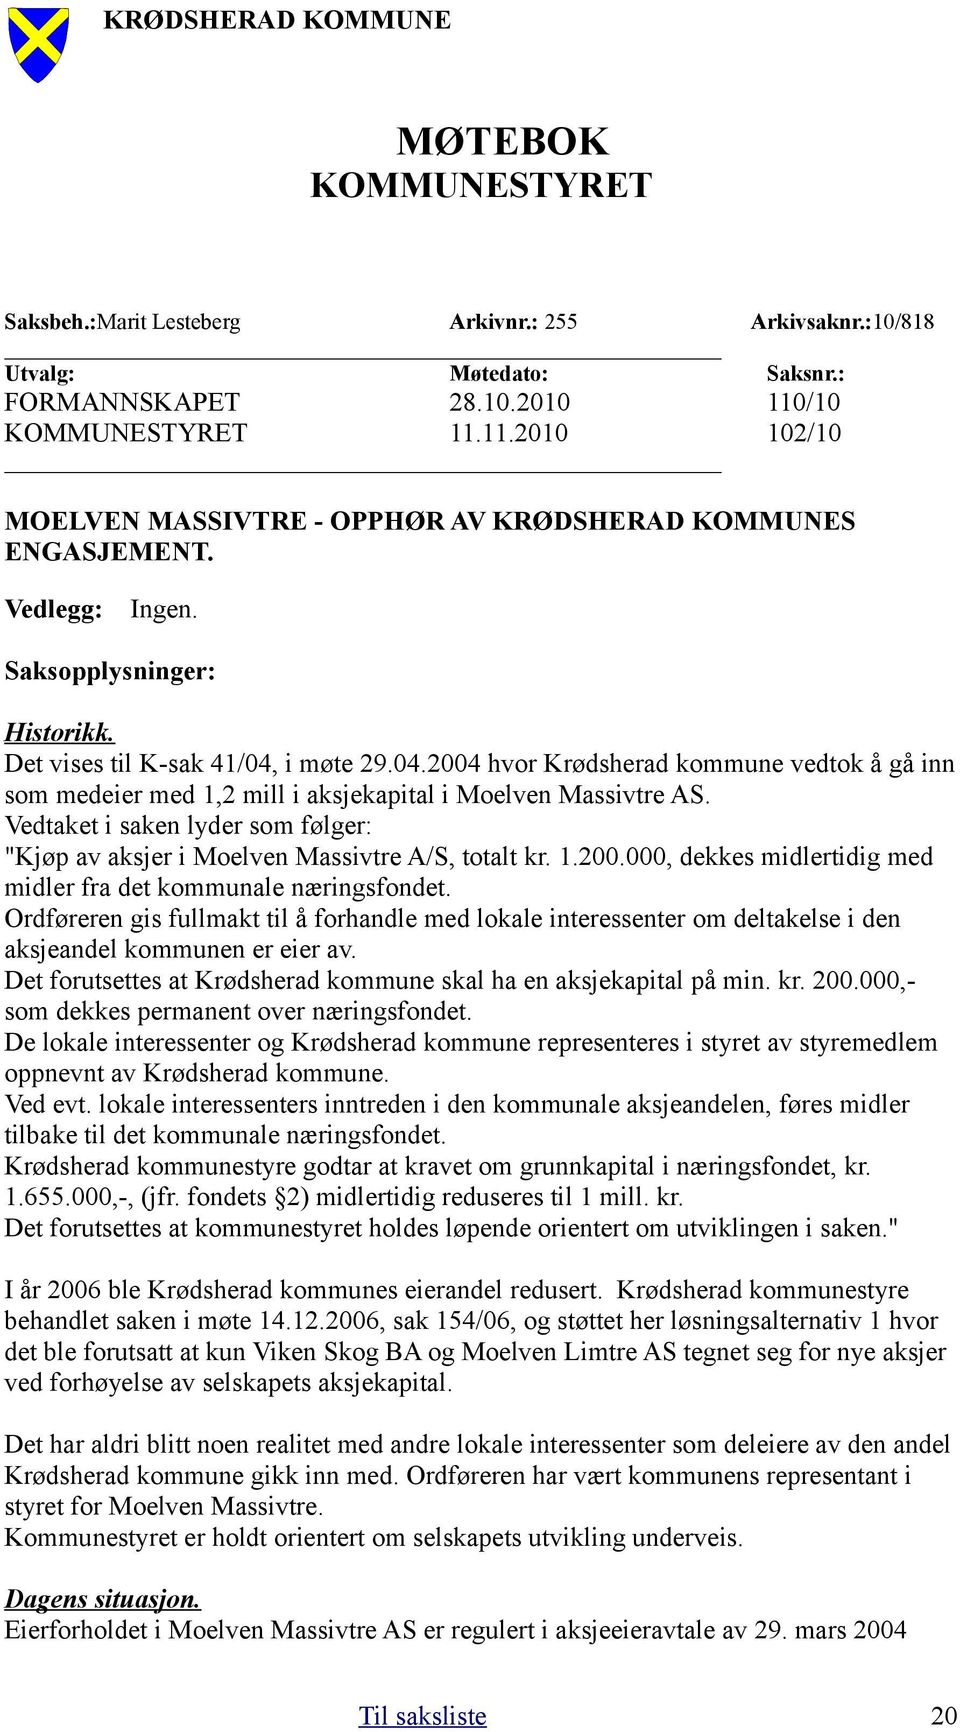 i møte 29.04.2004 hvor Krødsherad kommune vedtok å gå inn som medeier med 1,2 mill i aksjekapital i Moelven Massivtre AS.